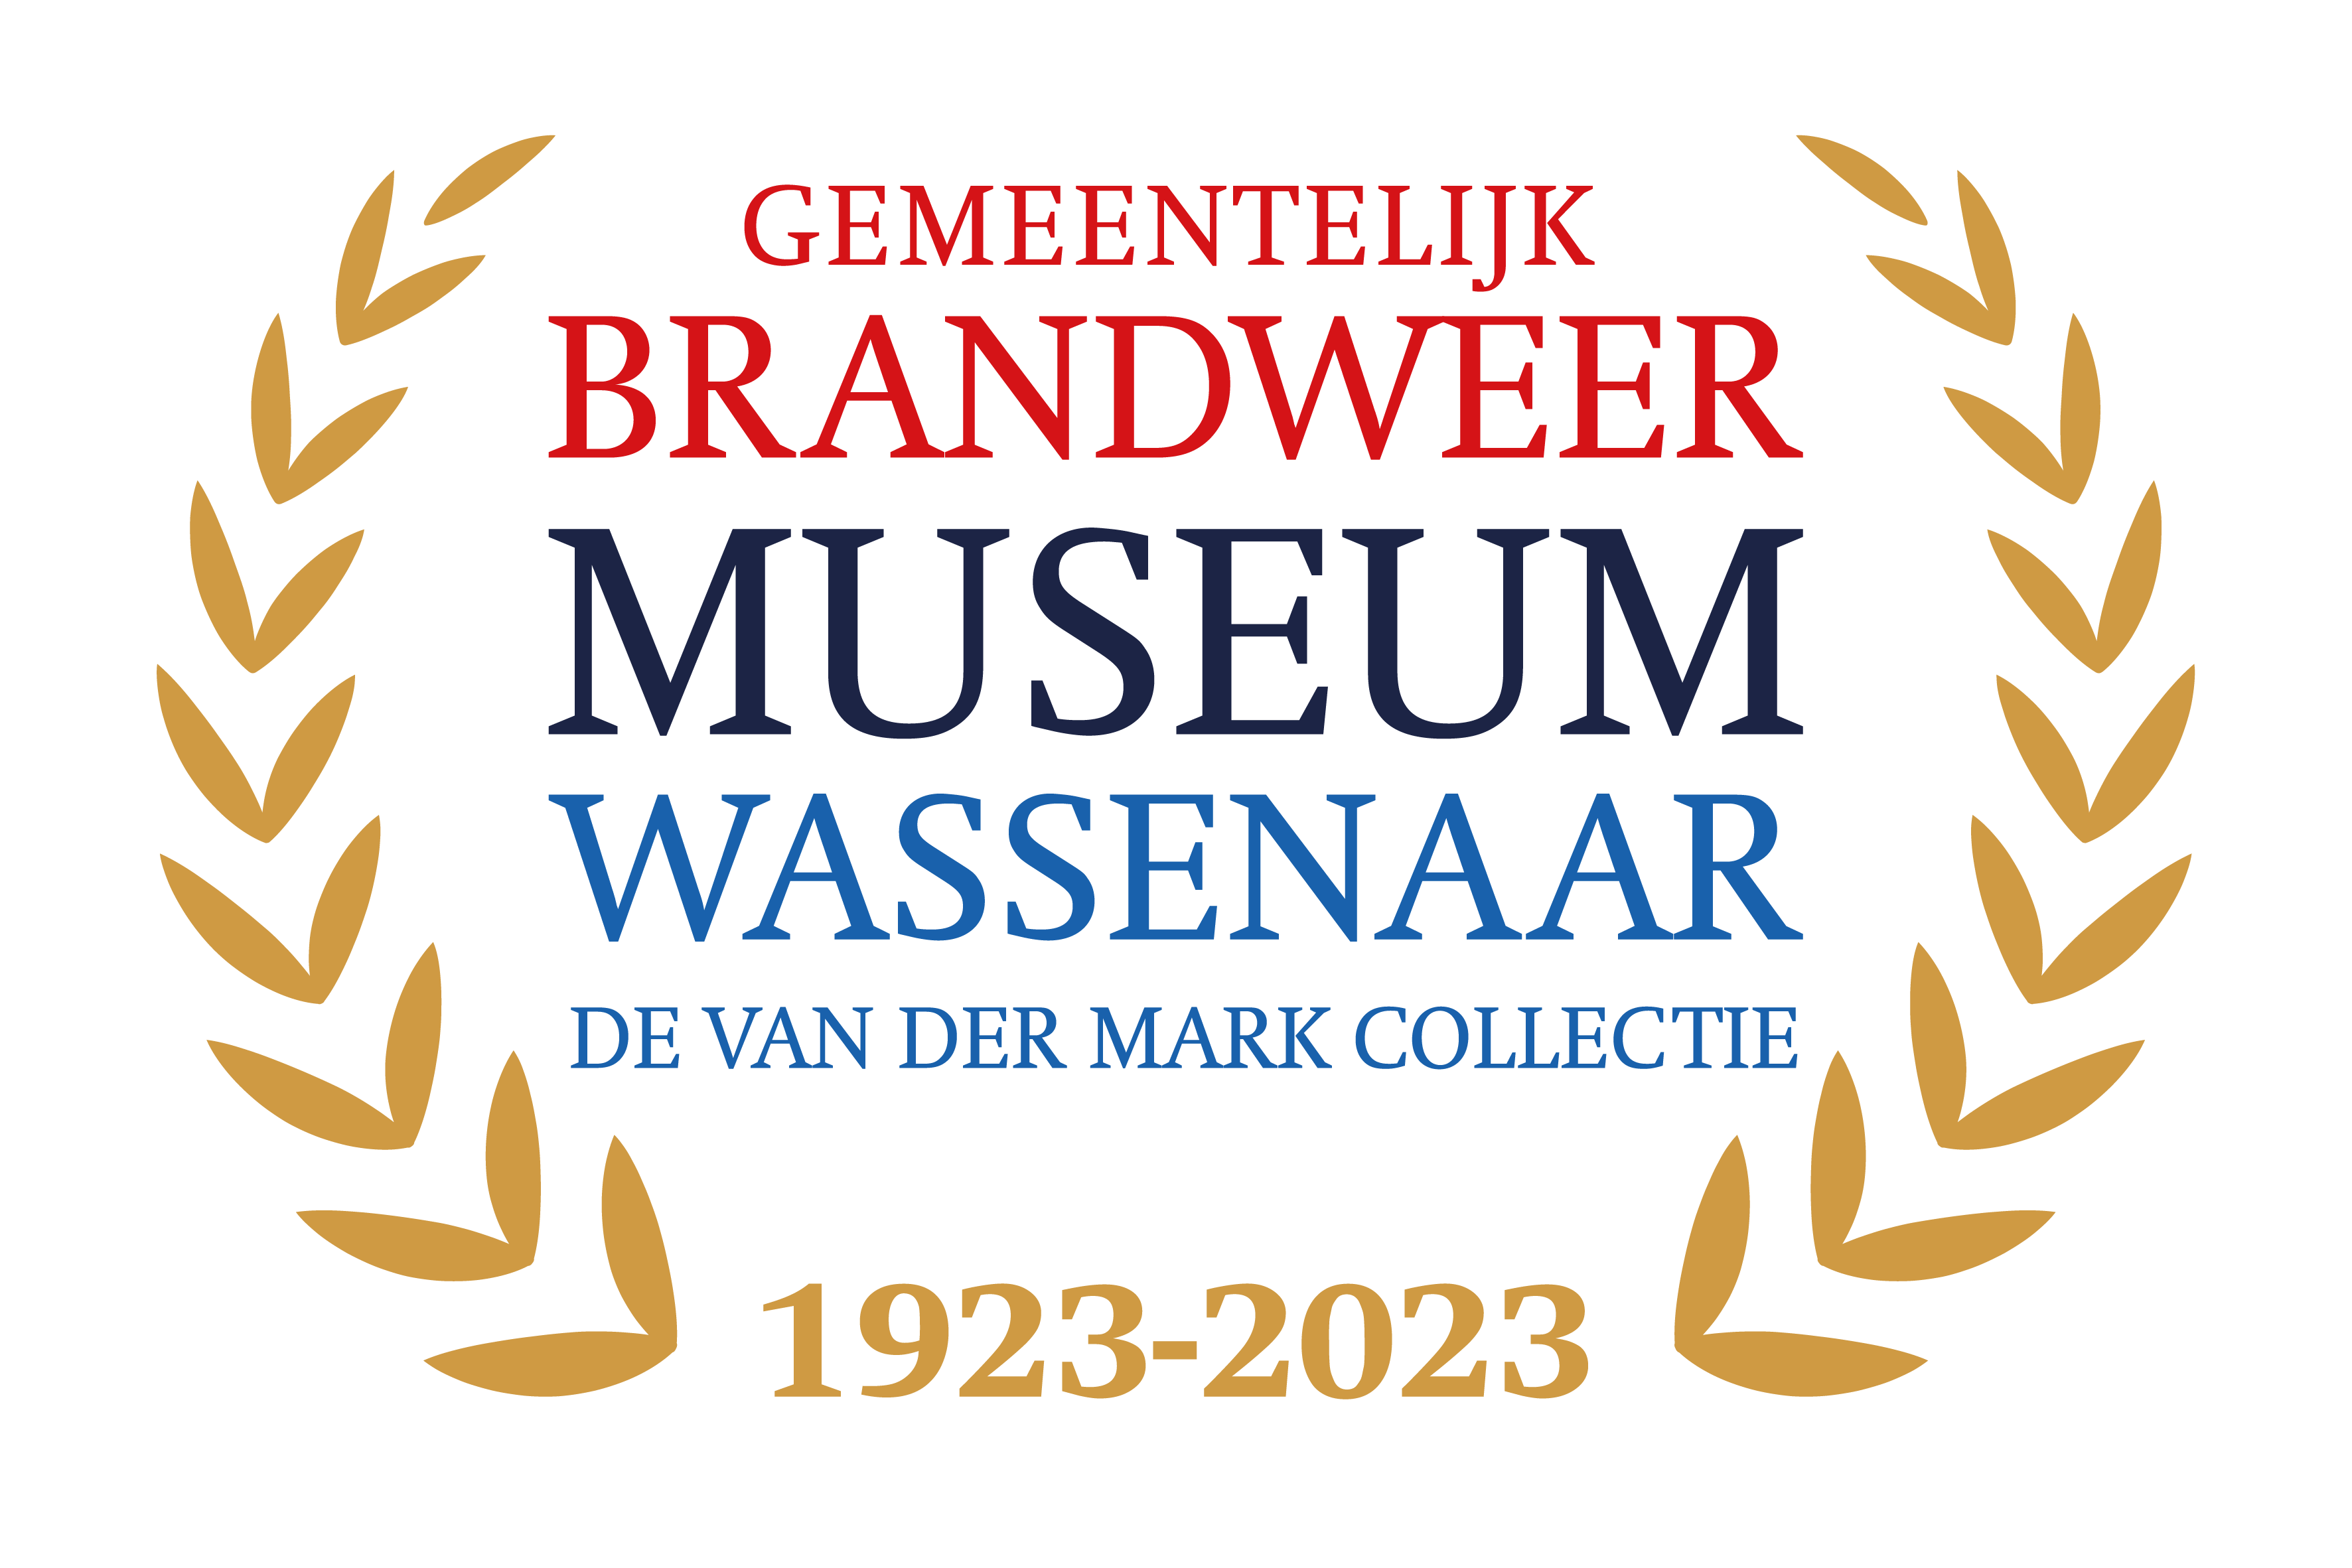 Gemeentelijk Brandweermuseum Wassenaar